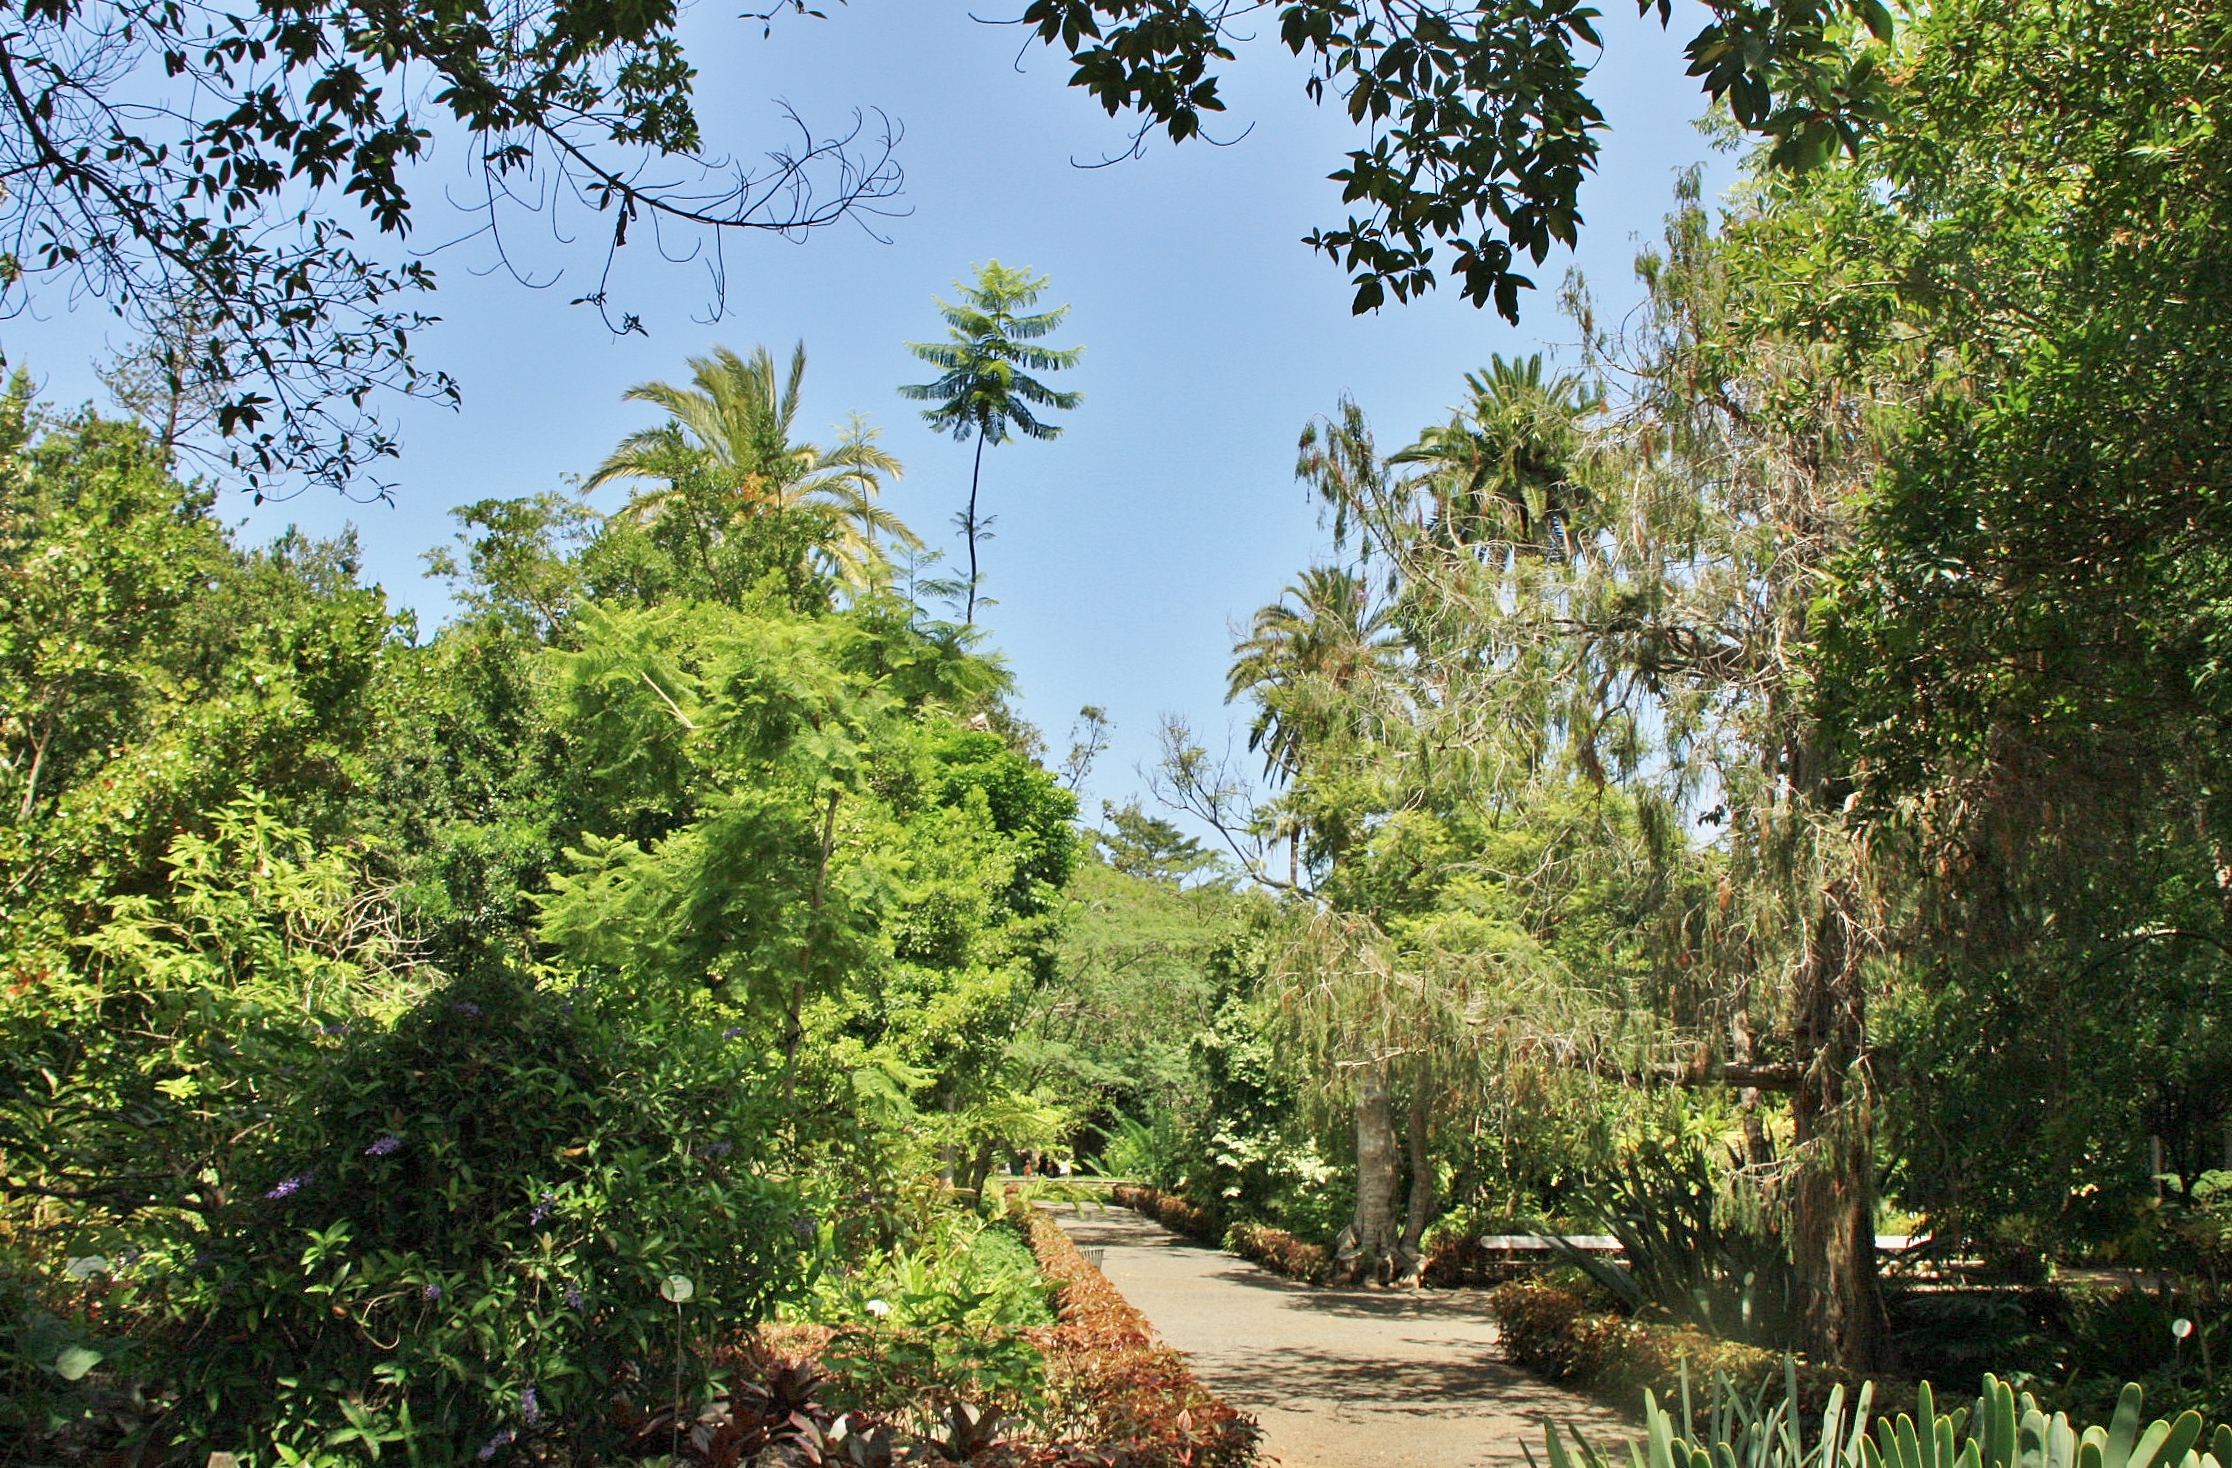 Foto: Jardin botanico - Puerto de la Cruz (Santa Cruz de Tenerife), España